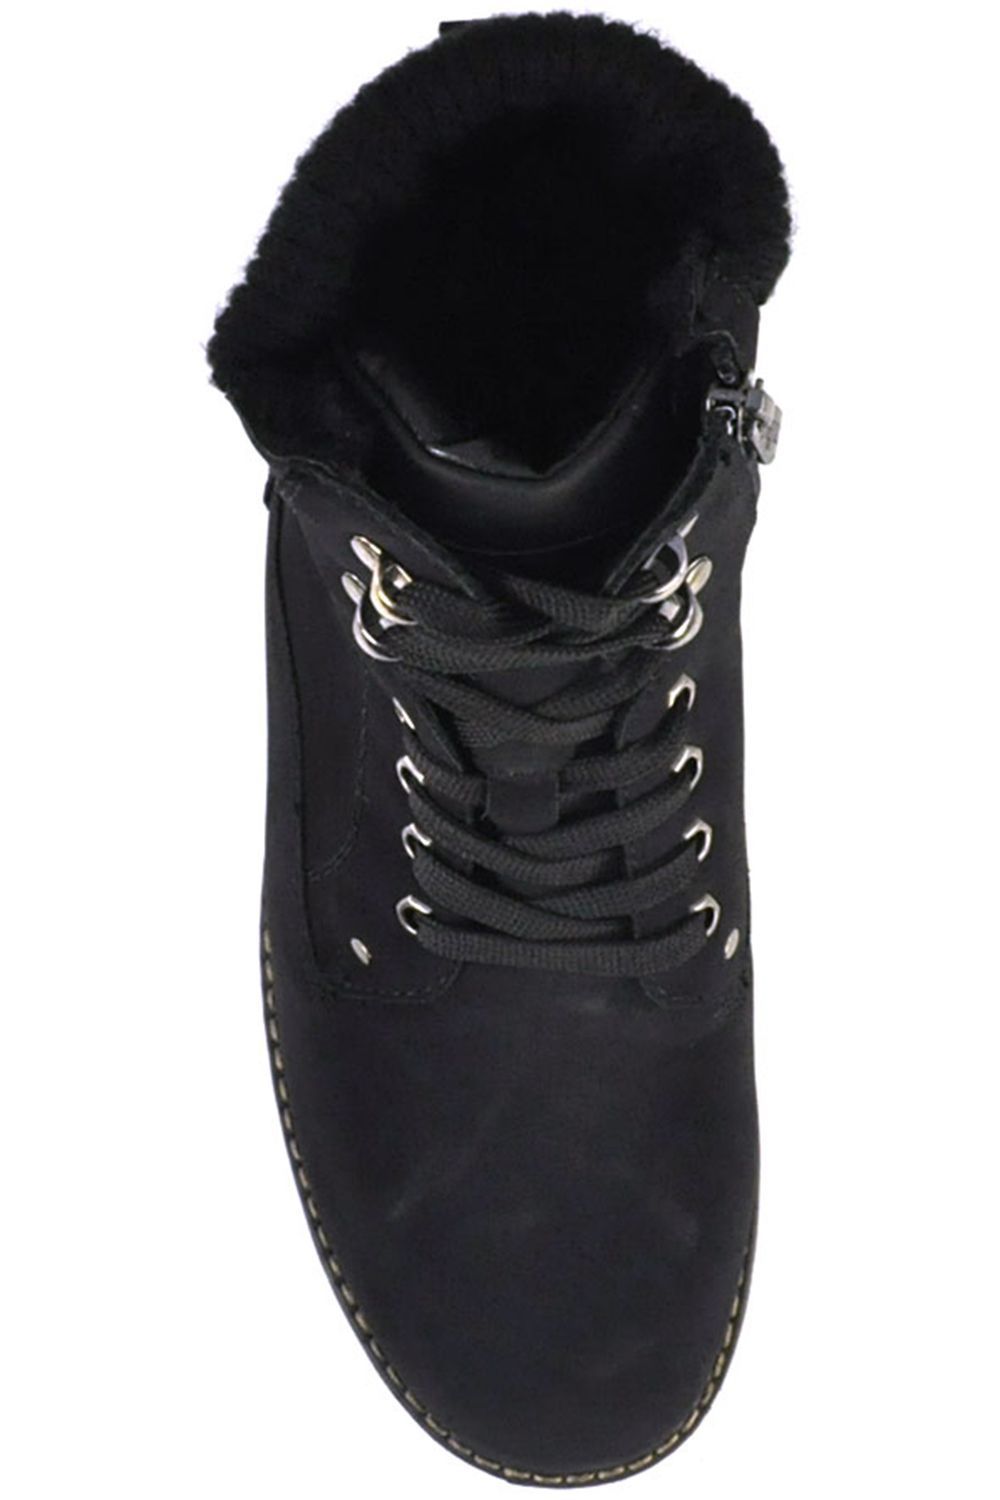 Ботинки Keddo, размер 40, цвет черный 578609/01-01 - фото 4